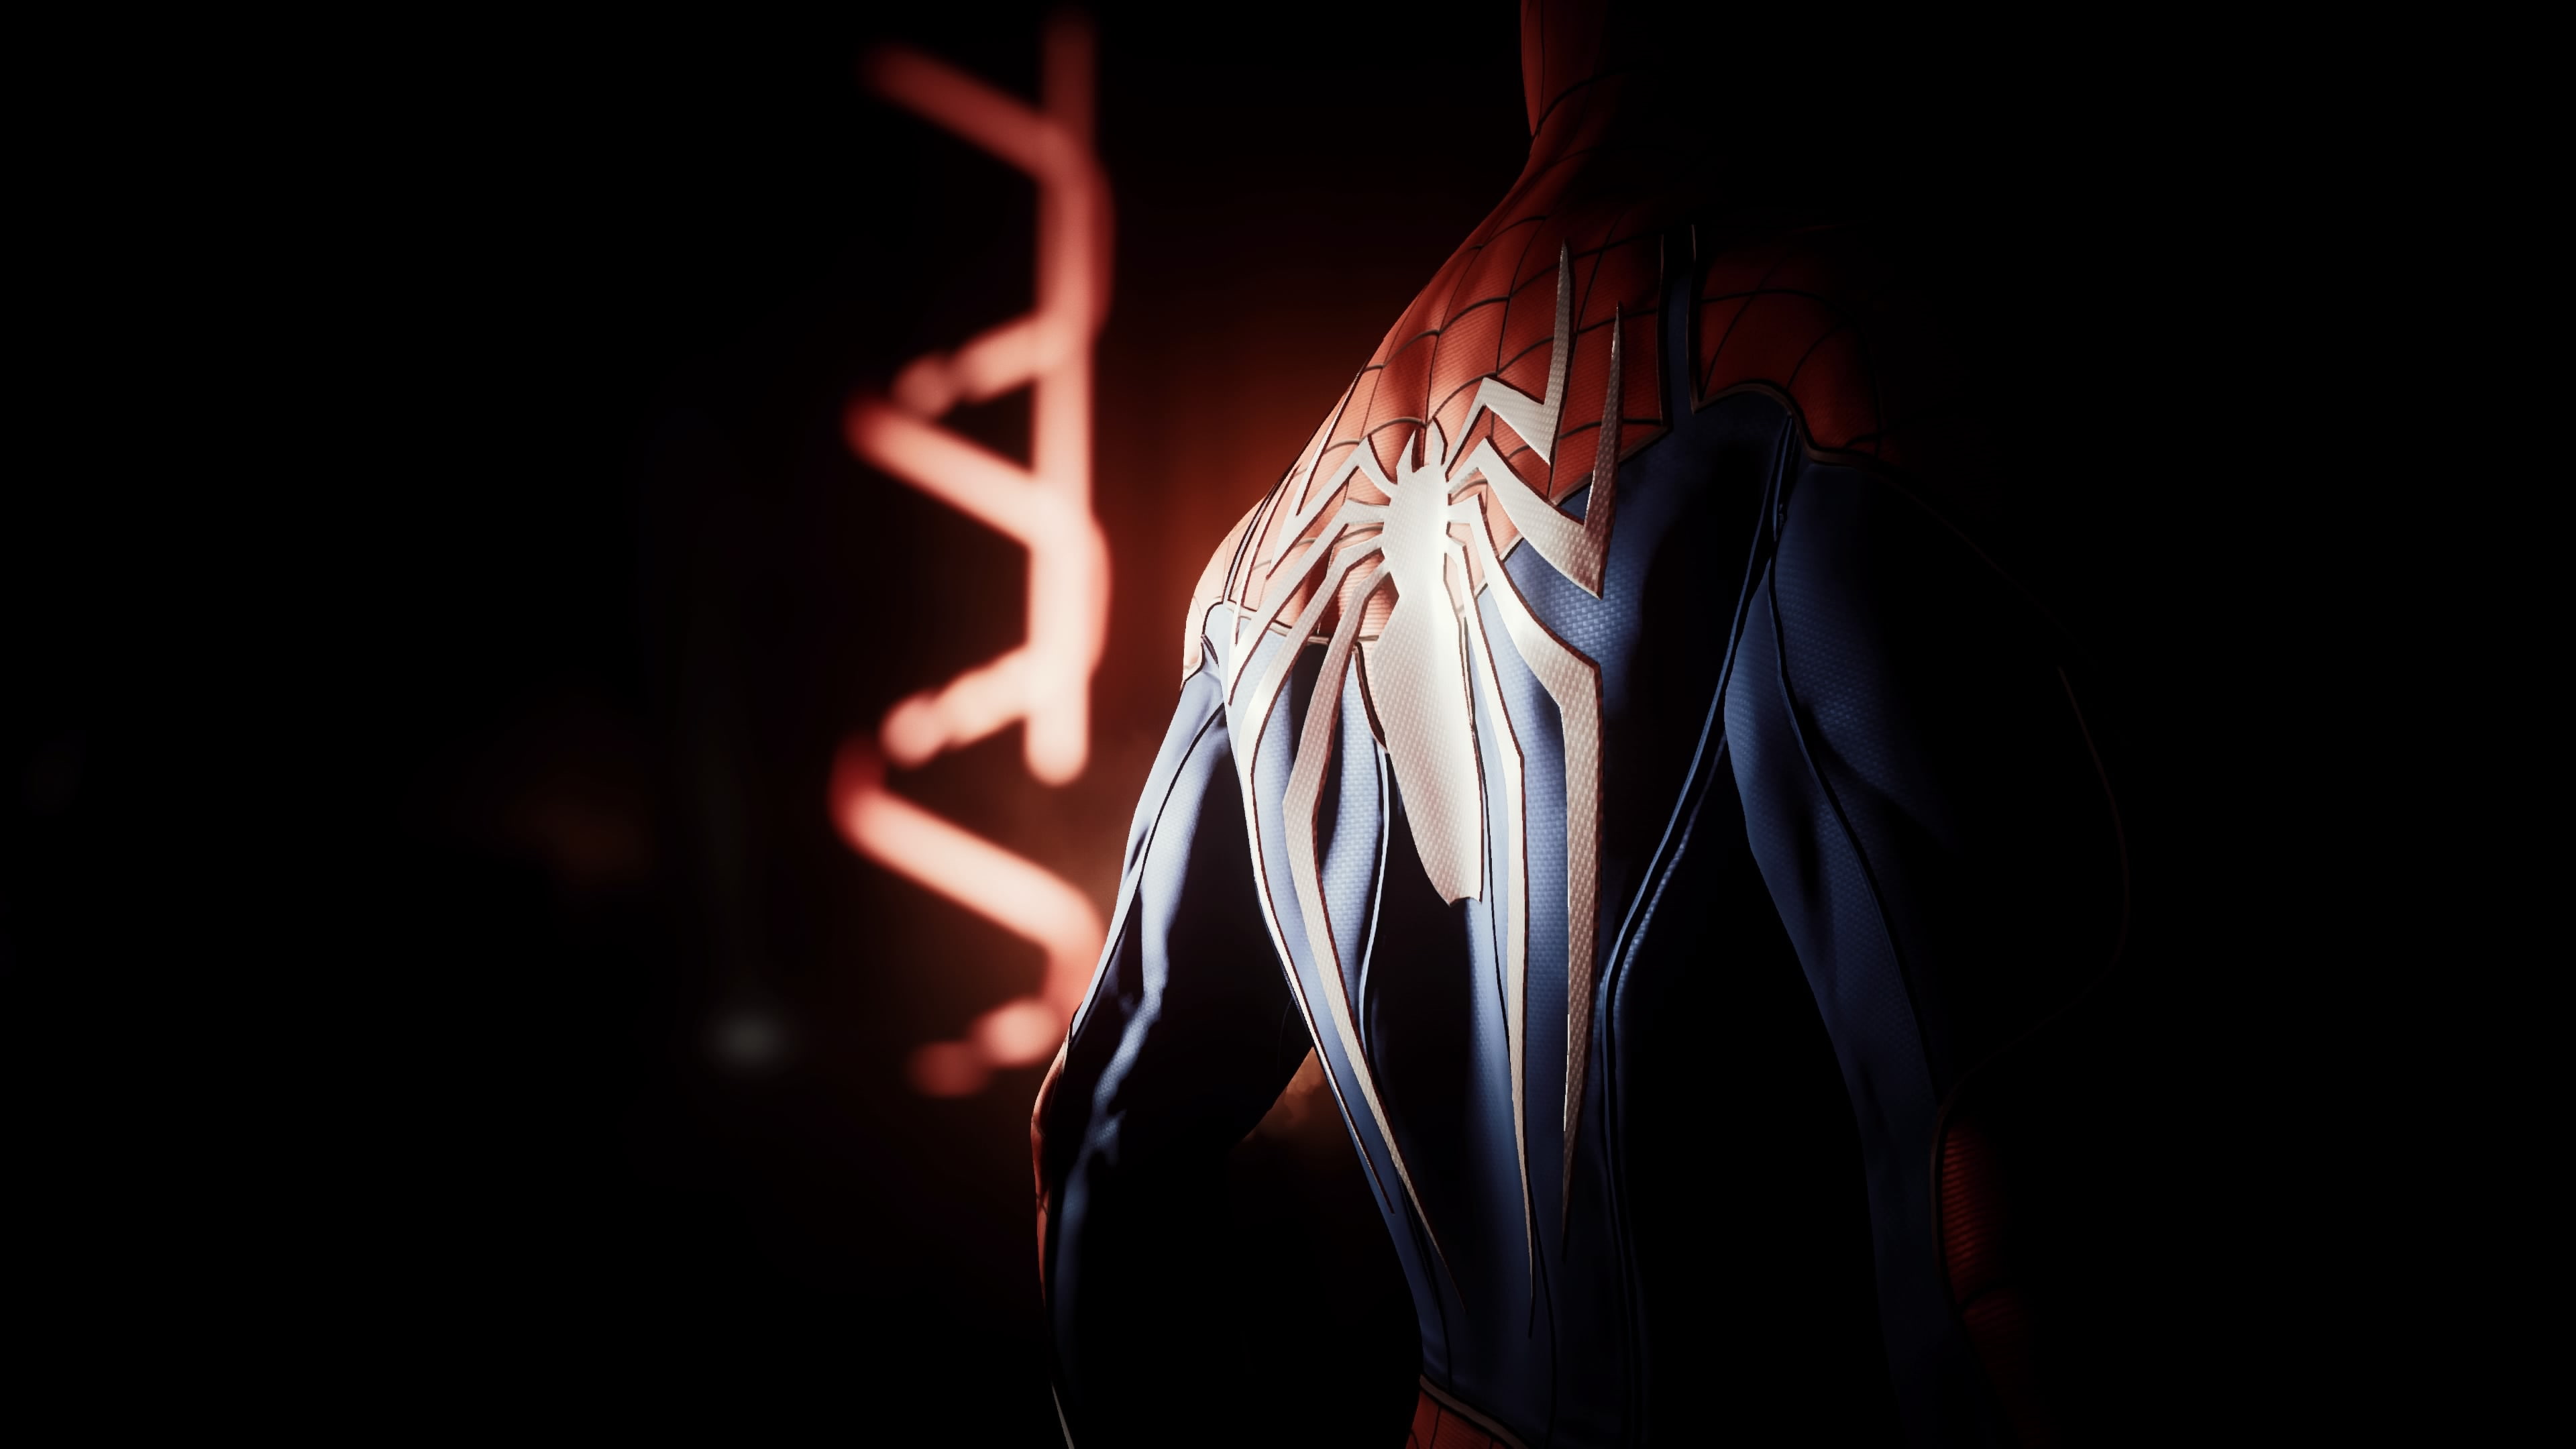 General 3840x2160 Spider-Man Spider-Man: No Way Home simple background digital art bodysuit superhero minimalism